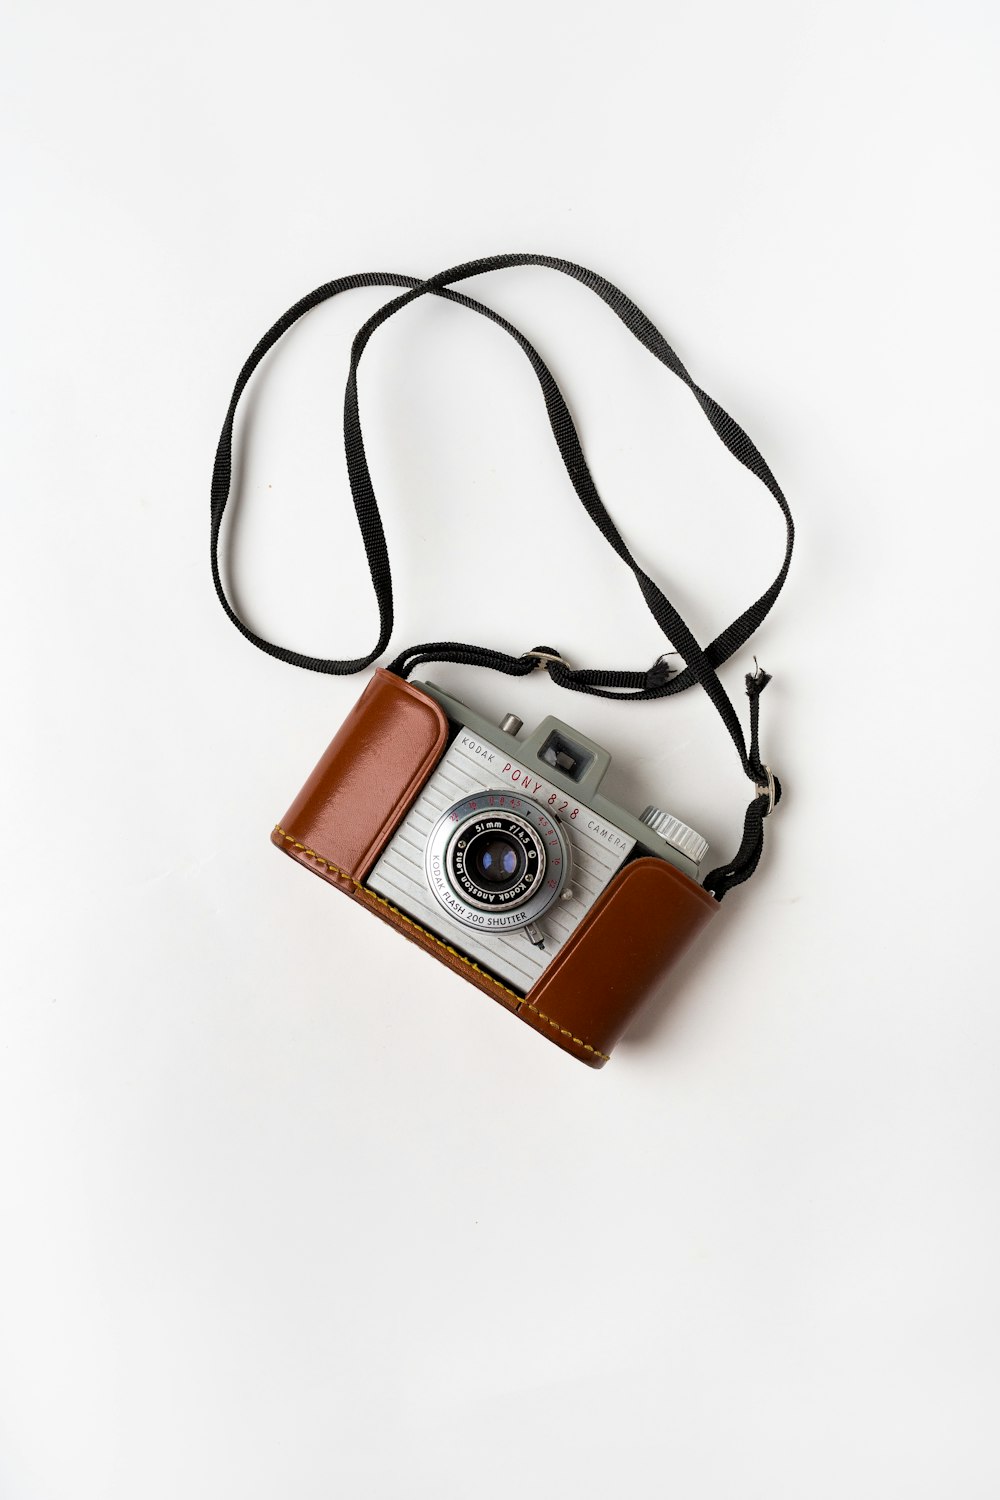 Kodak vintage camera fotografías e imágenes de alta resolución - Alamy